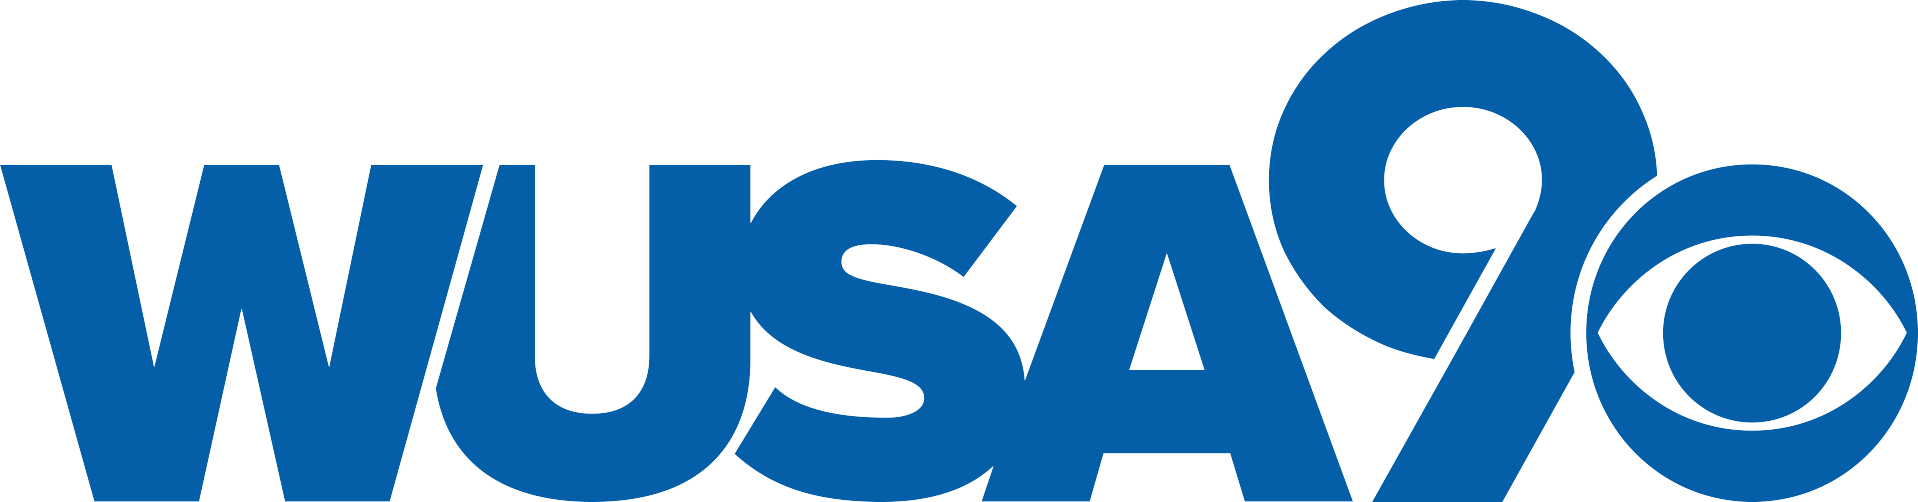 WUSA9 Logo